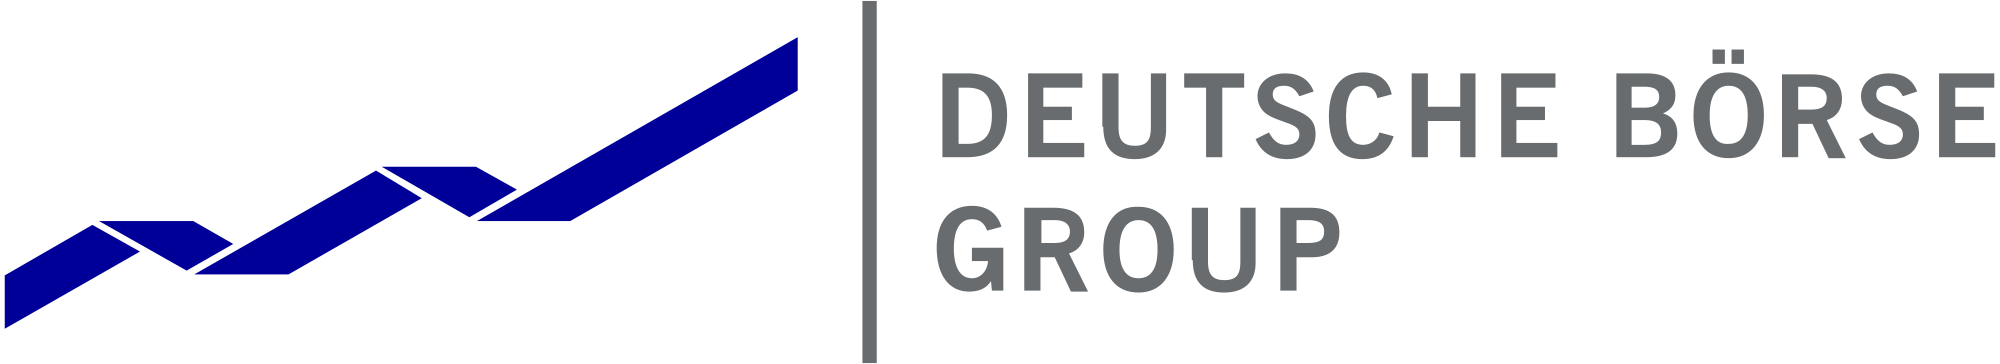 Deutsche Börse Group Logo